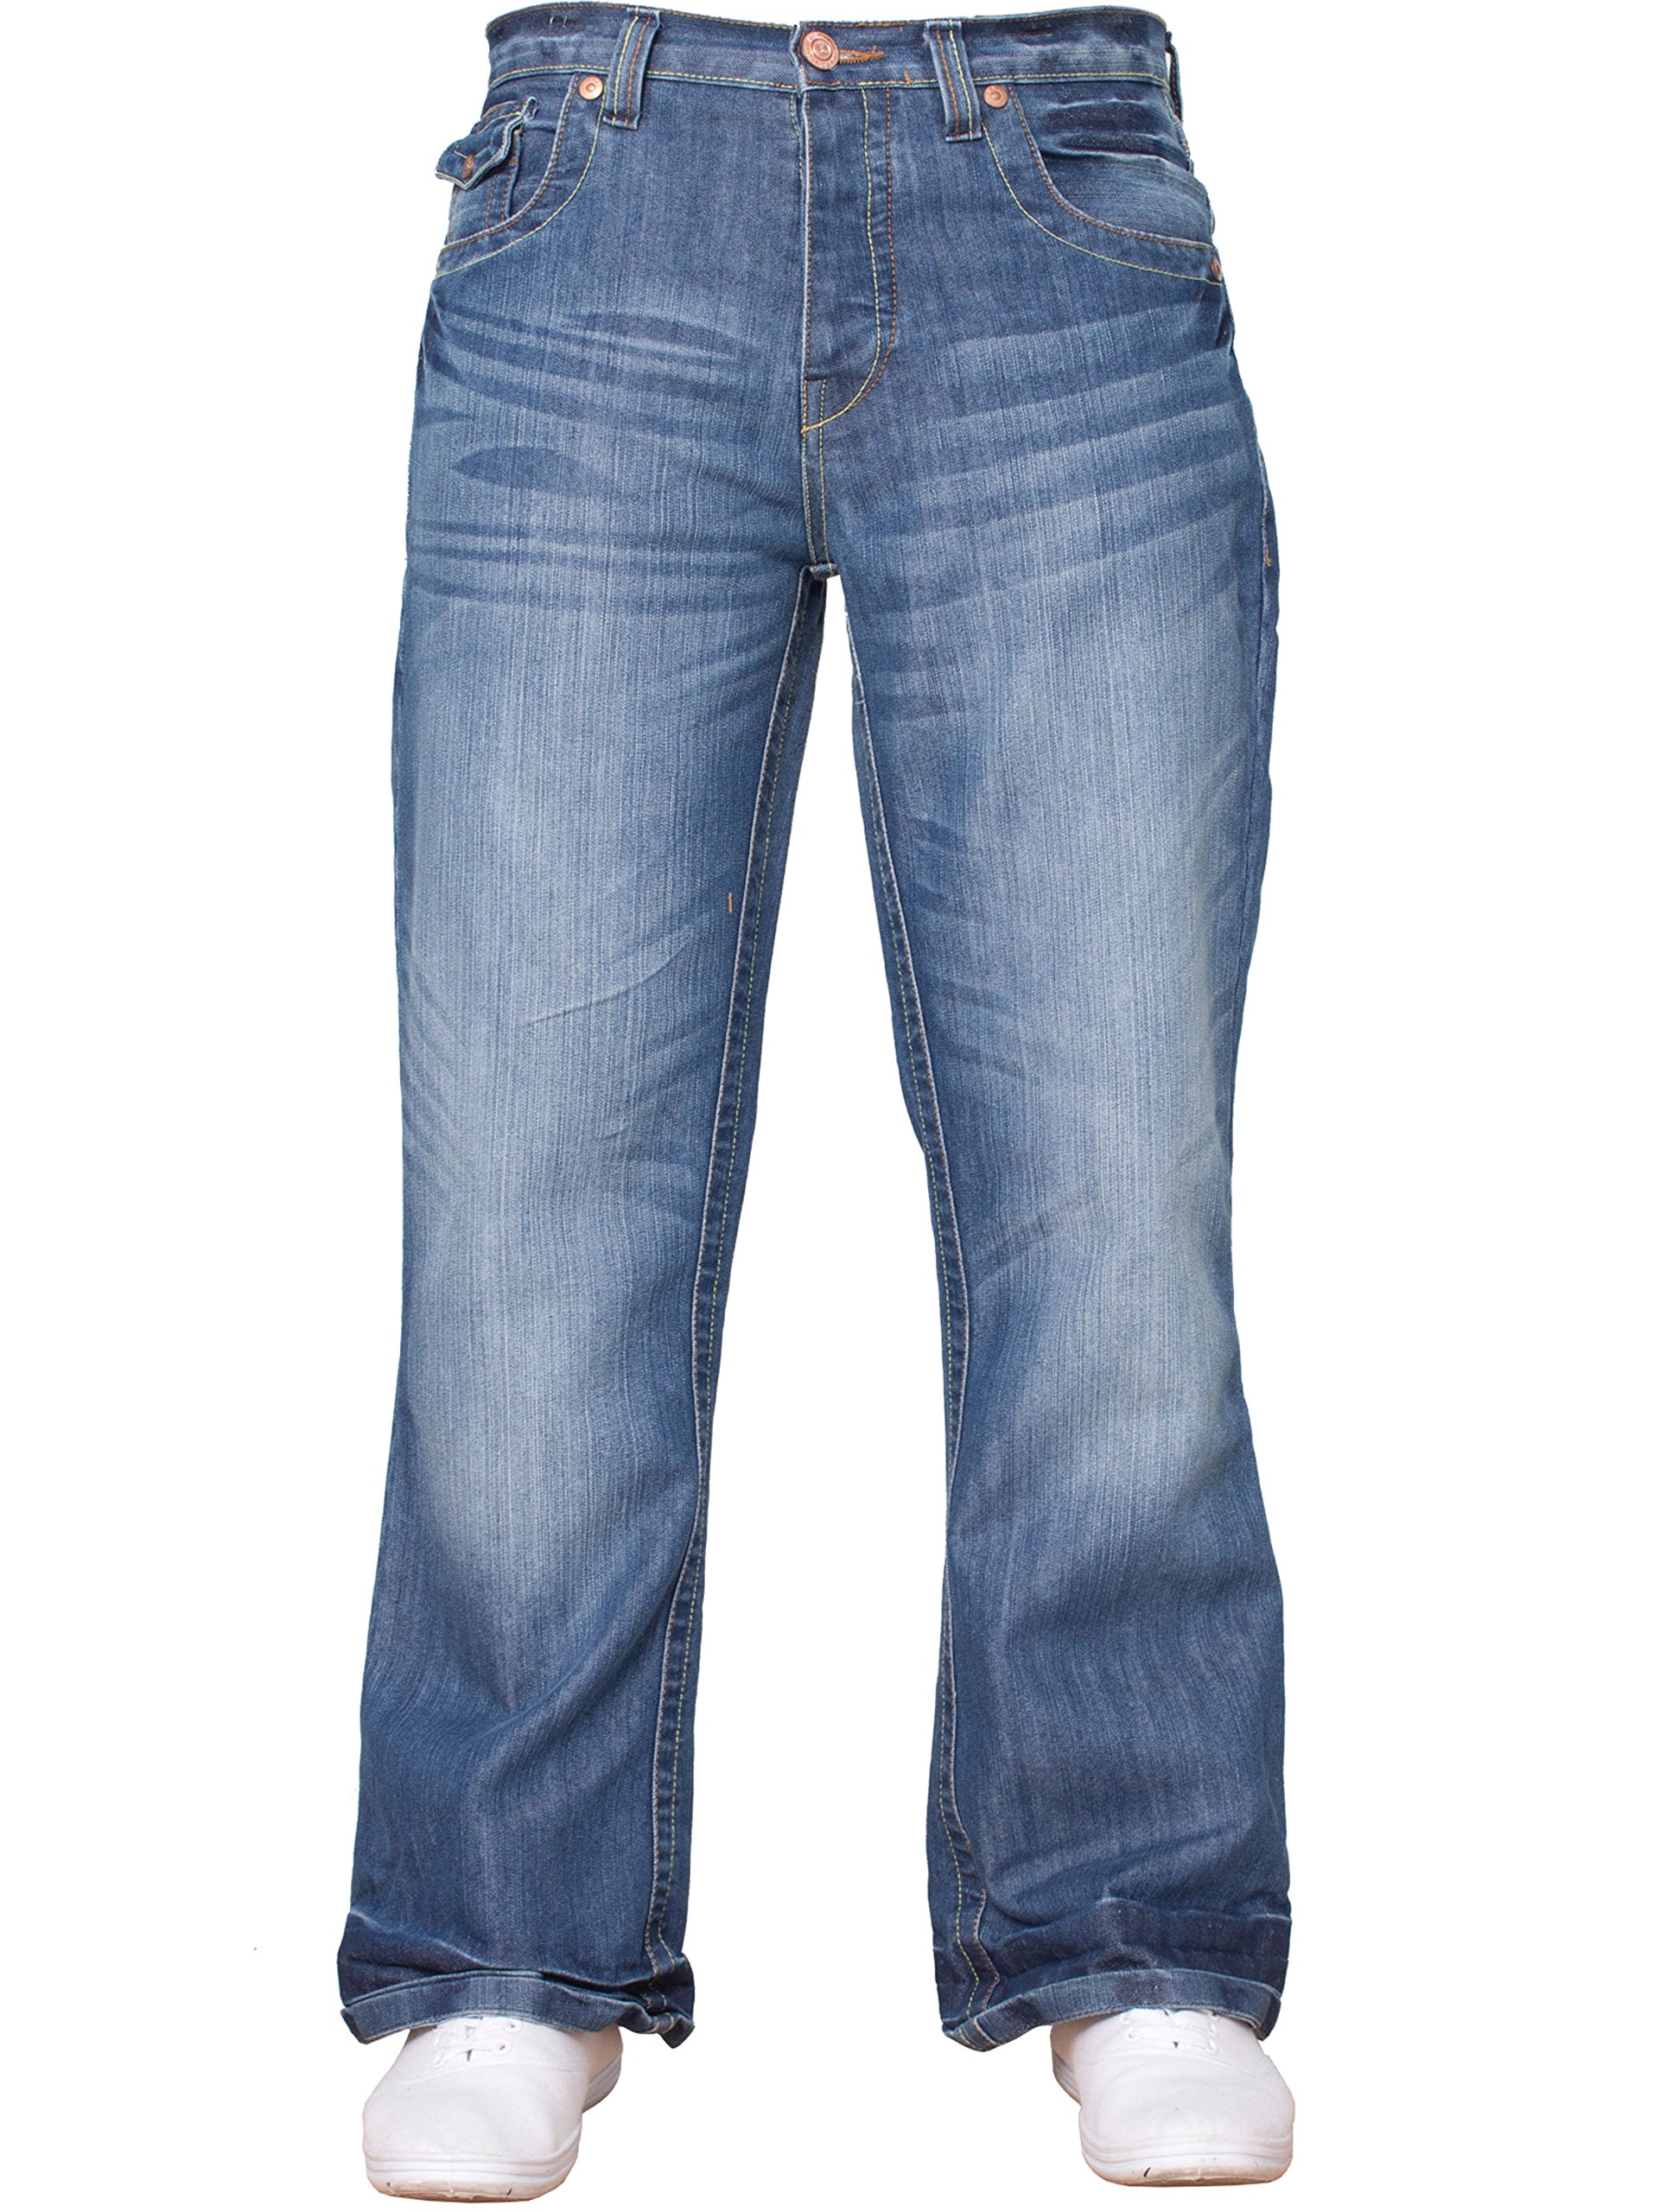 NEU Herren Designer einfach Bootcut ausgestellt weites Bein blau Jeans alle Hüfte Größen - LIGHTSTONE WASCHUNG, 40 W X 34L